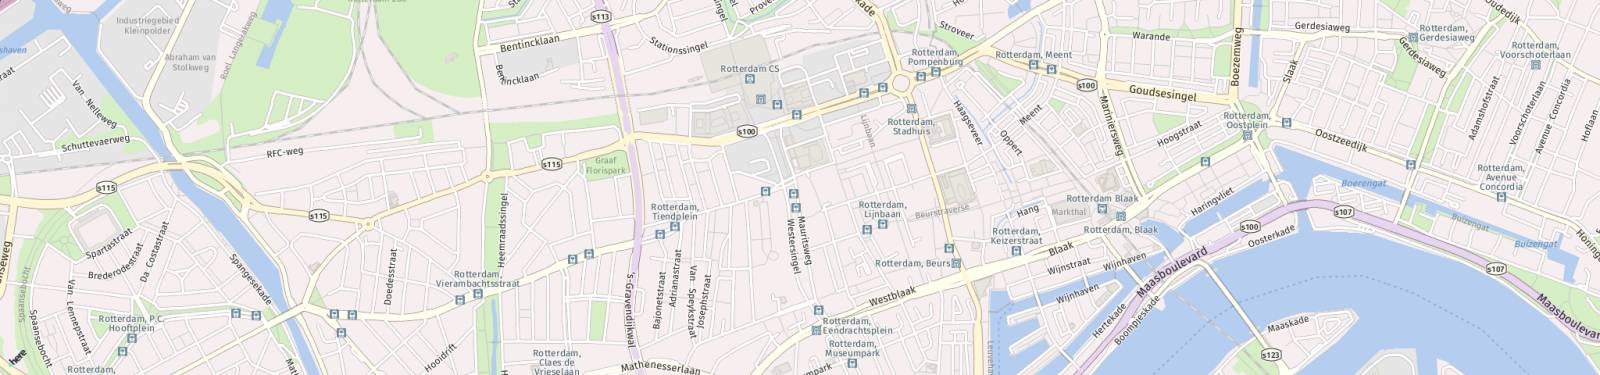 Kaart met locatie Appartement Kruisplein